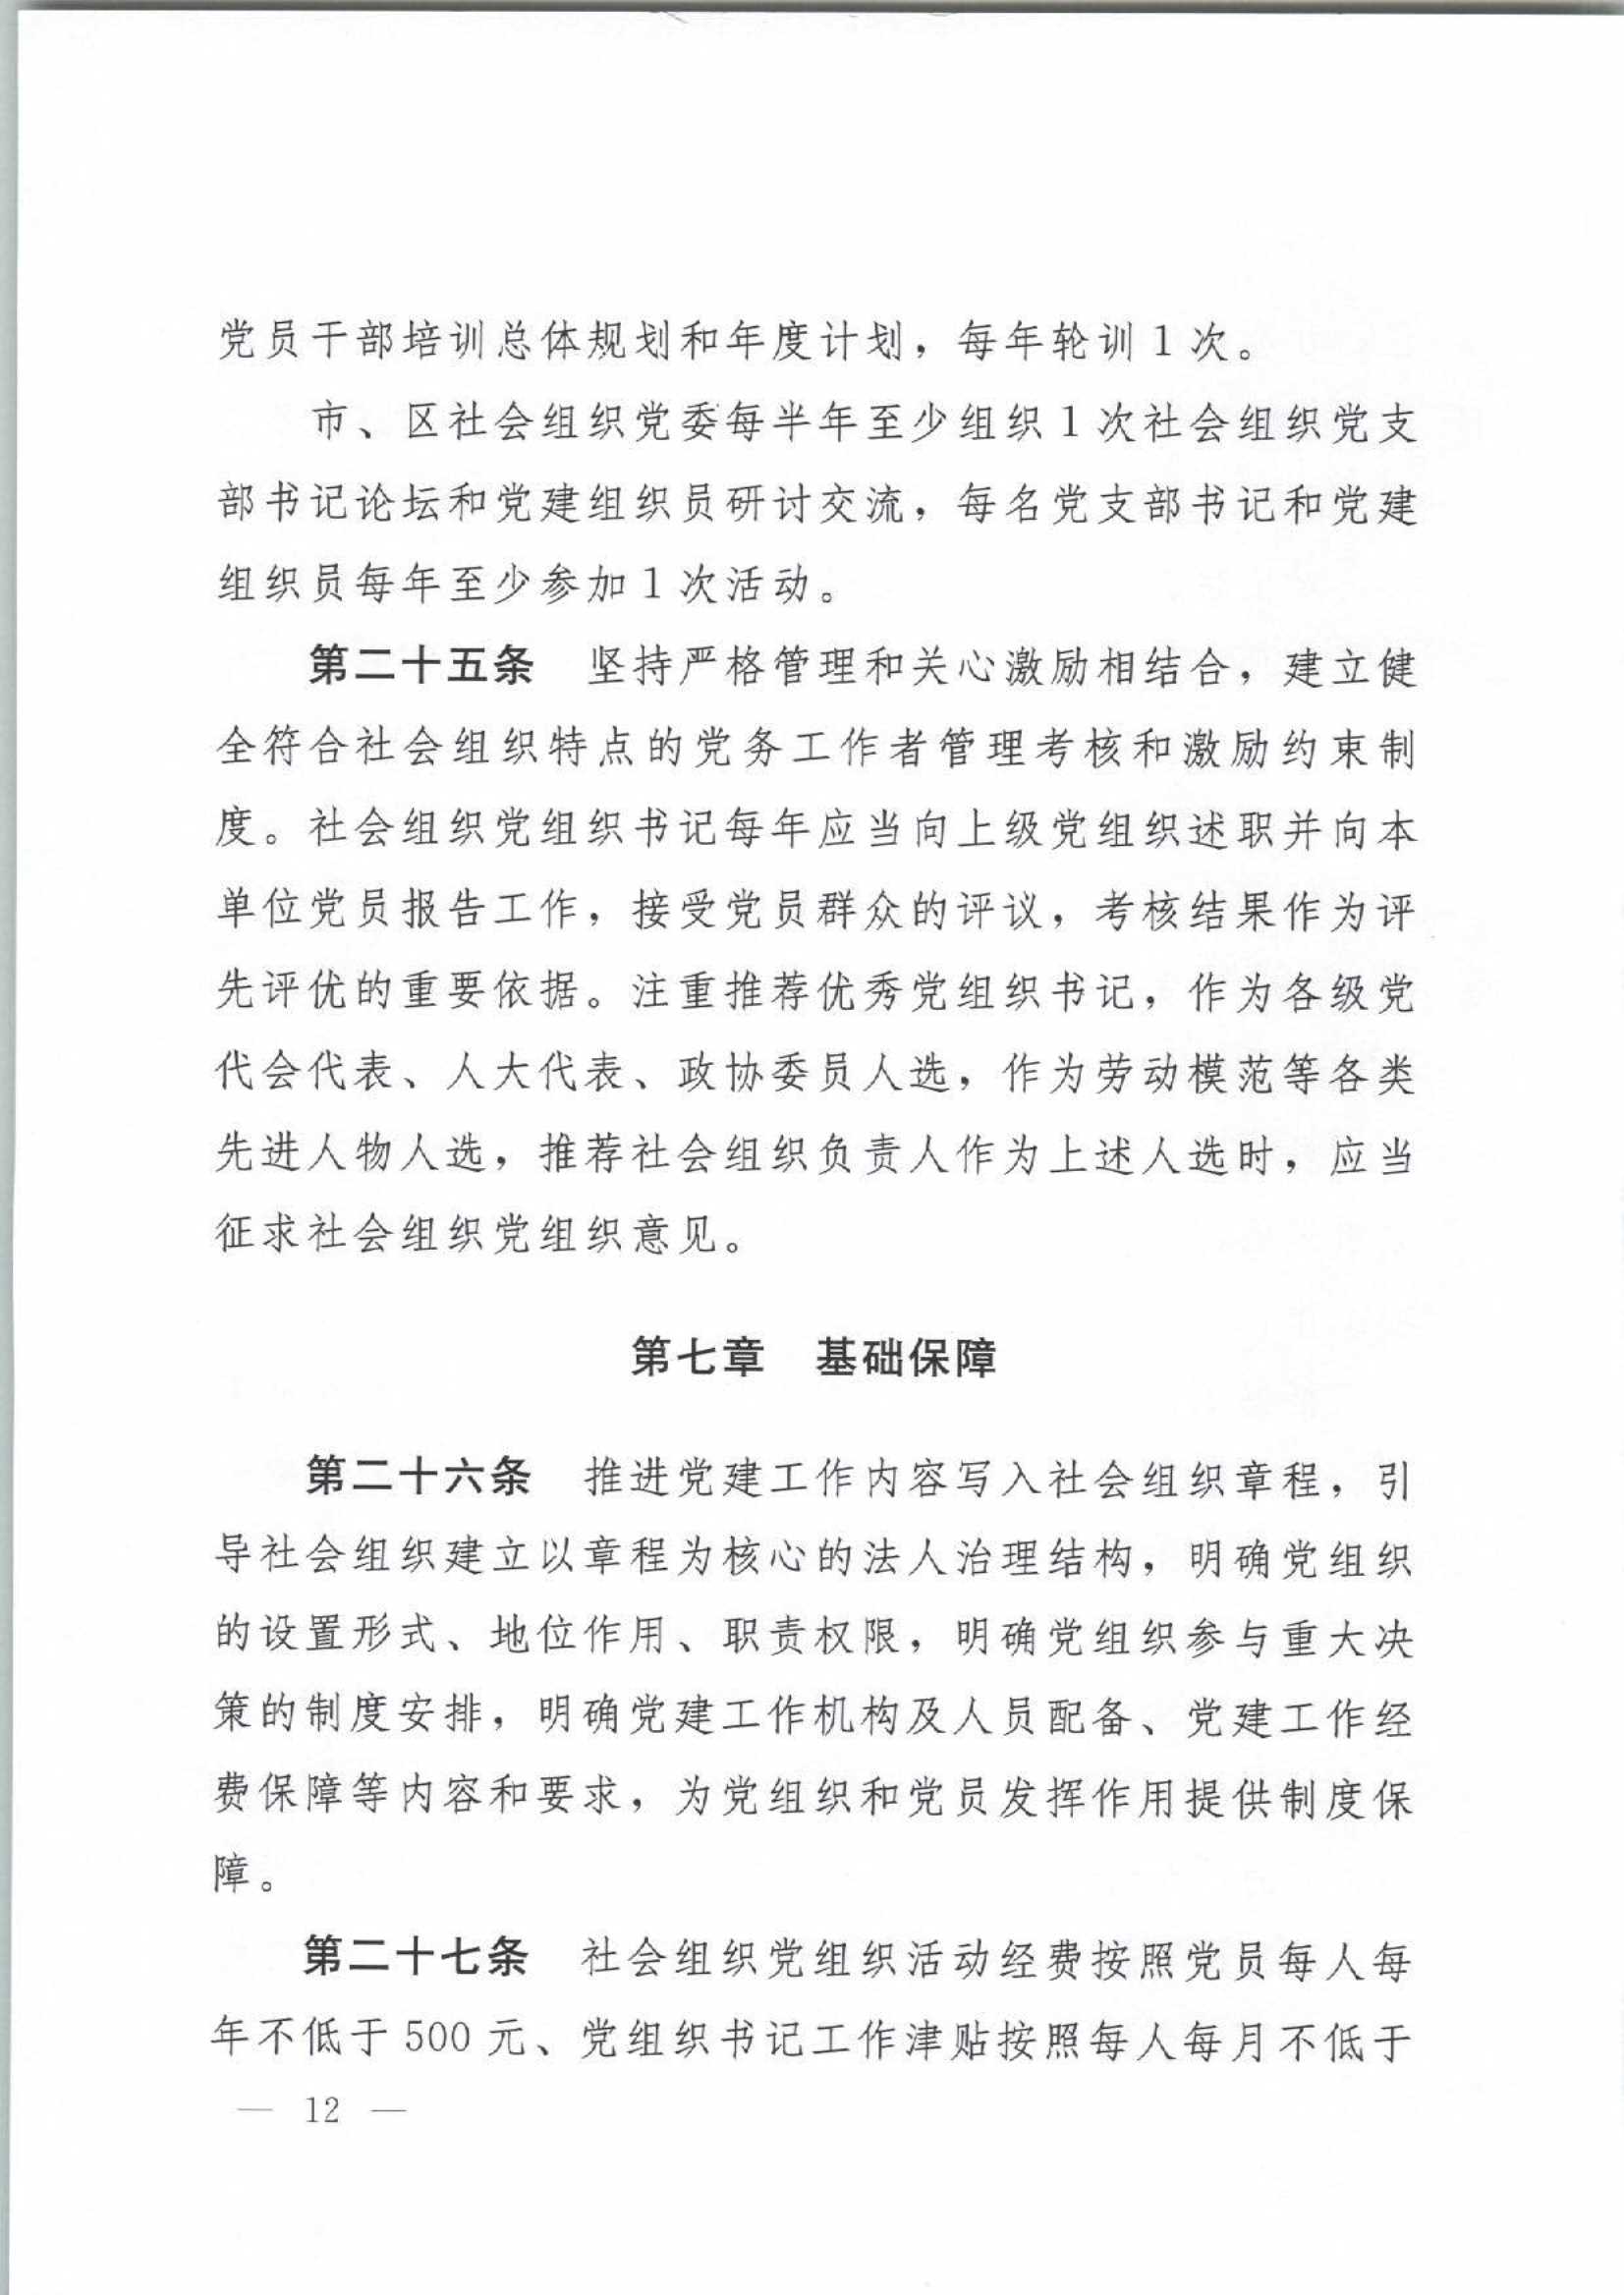 4.深圳市社会组织党的建设工作规定_12.Jpeg